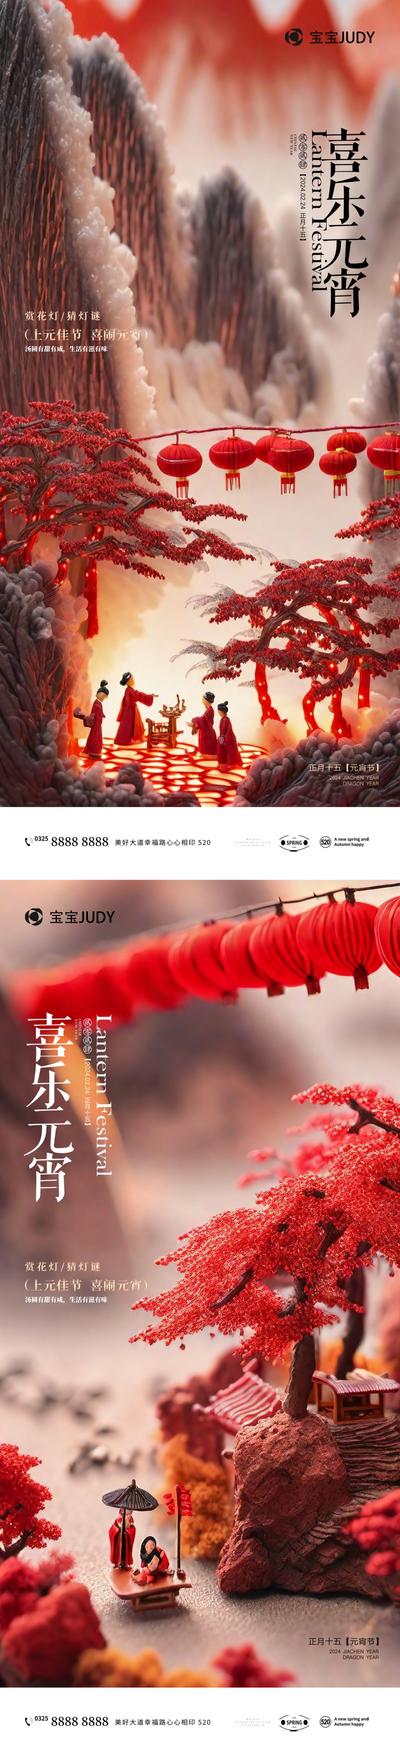 南门网 广告 海报 节日 元宵 摄影 微距 氛围 灯笼 AI 仕女 系列